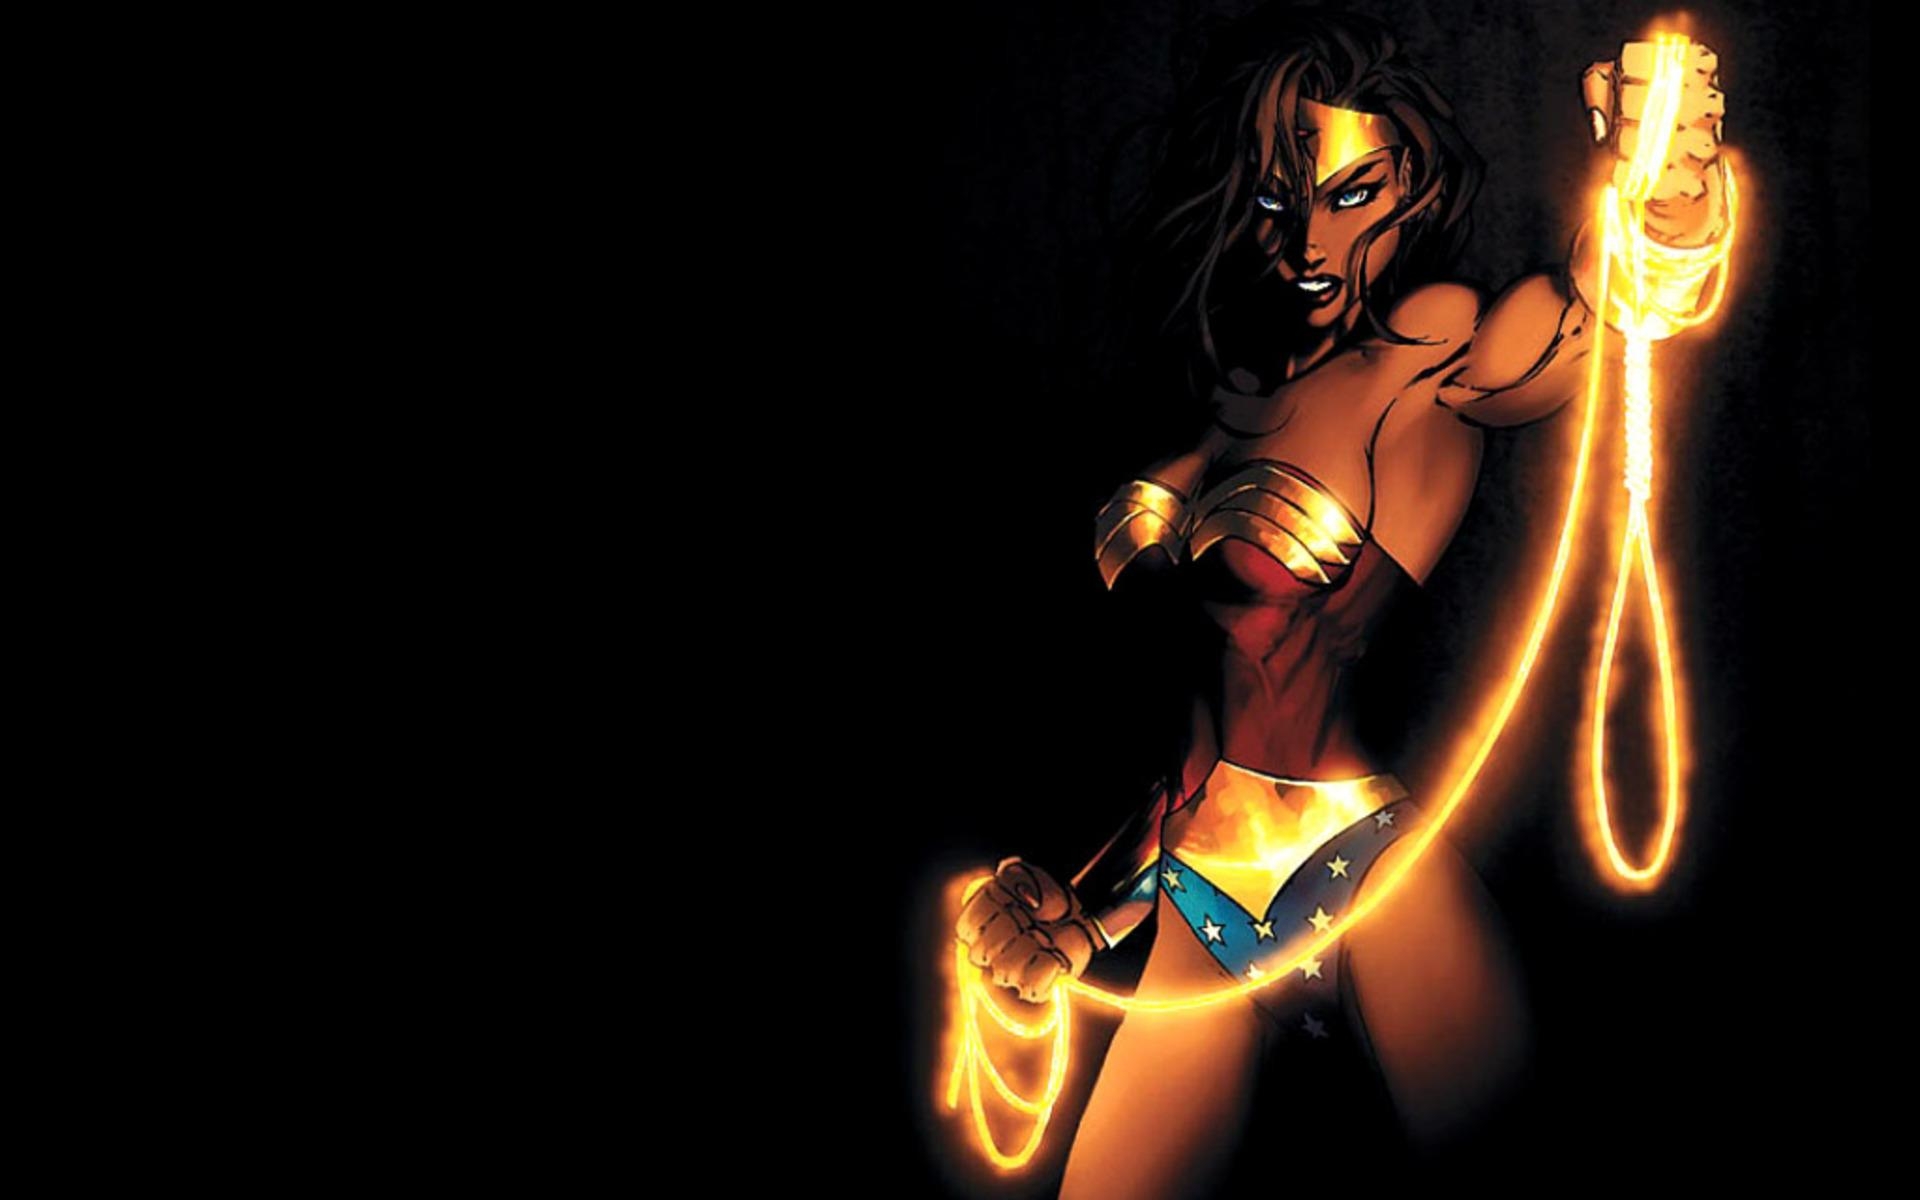 Wonder Woman in action: long black hair, blue eyes, wearing a glowing headdress, belt, bracelet from DC Comics.